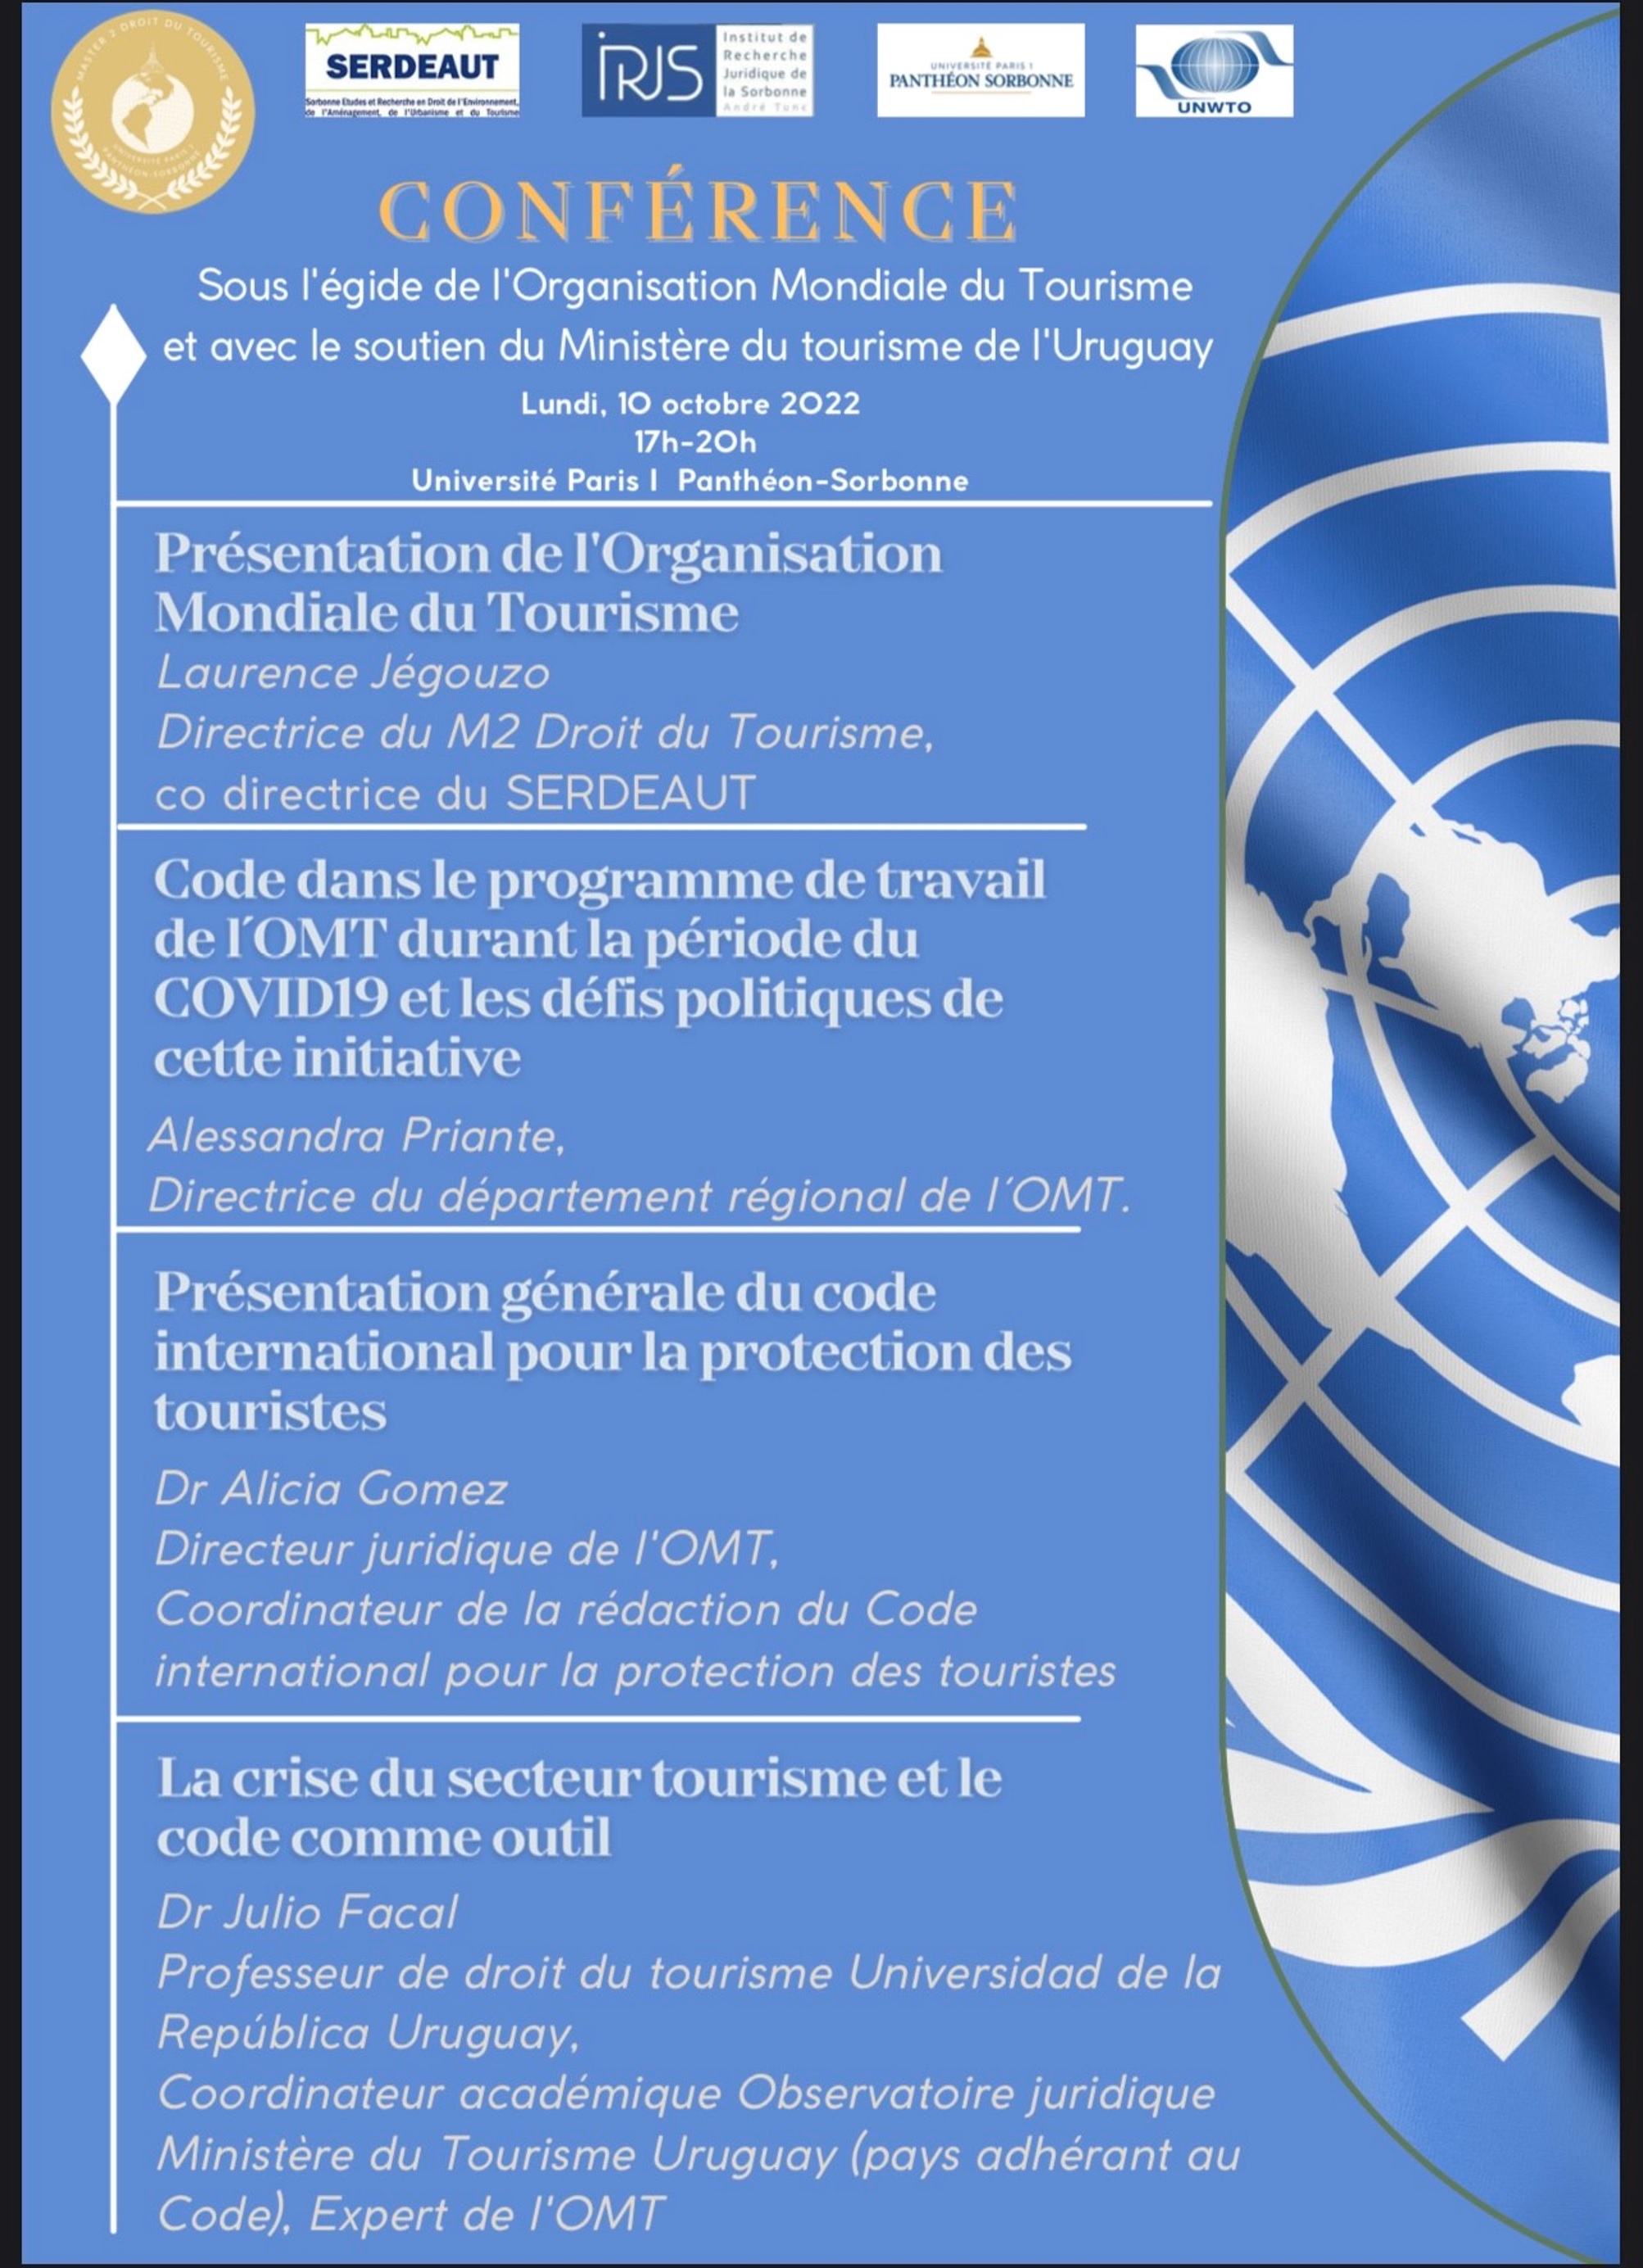 Le programme de la Conférence organisée sous l'égide de l'organisation mondiale du tourisme et le soutien du ministère du Tourisme de l'Uruguay - DR